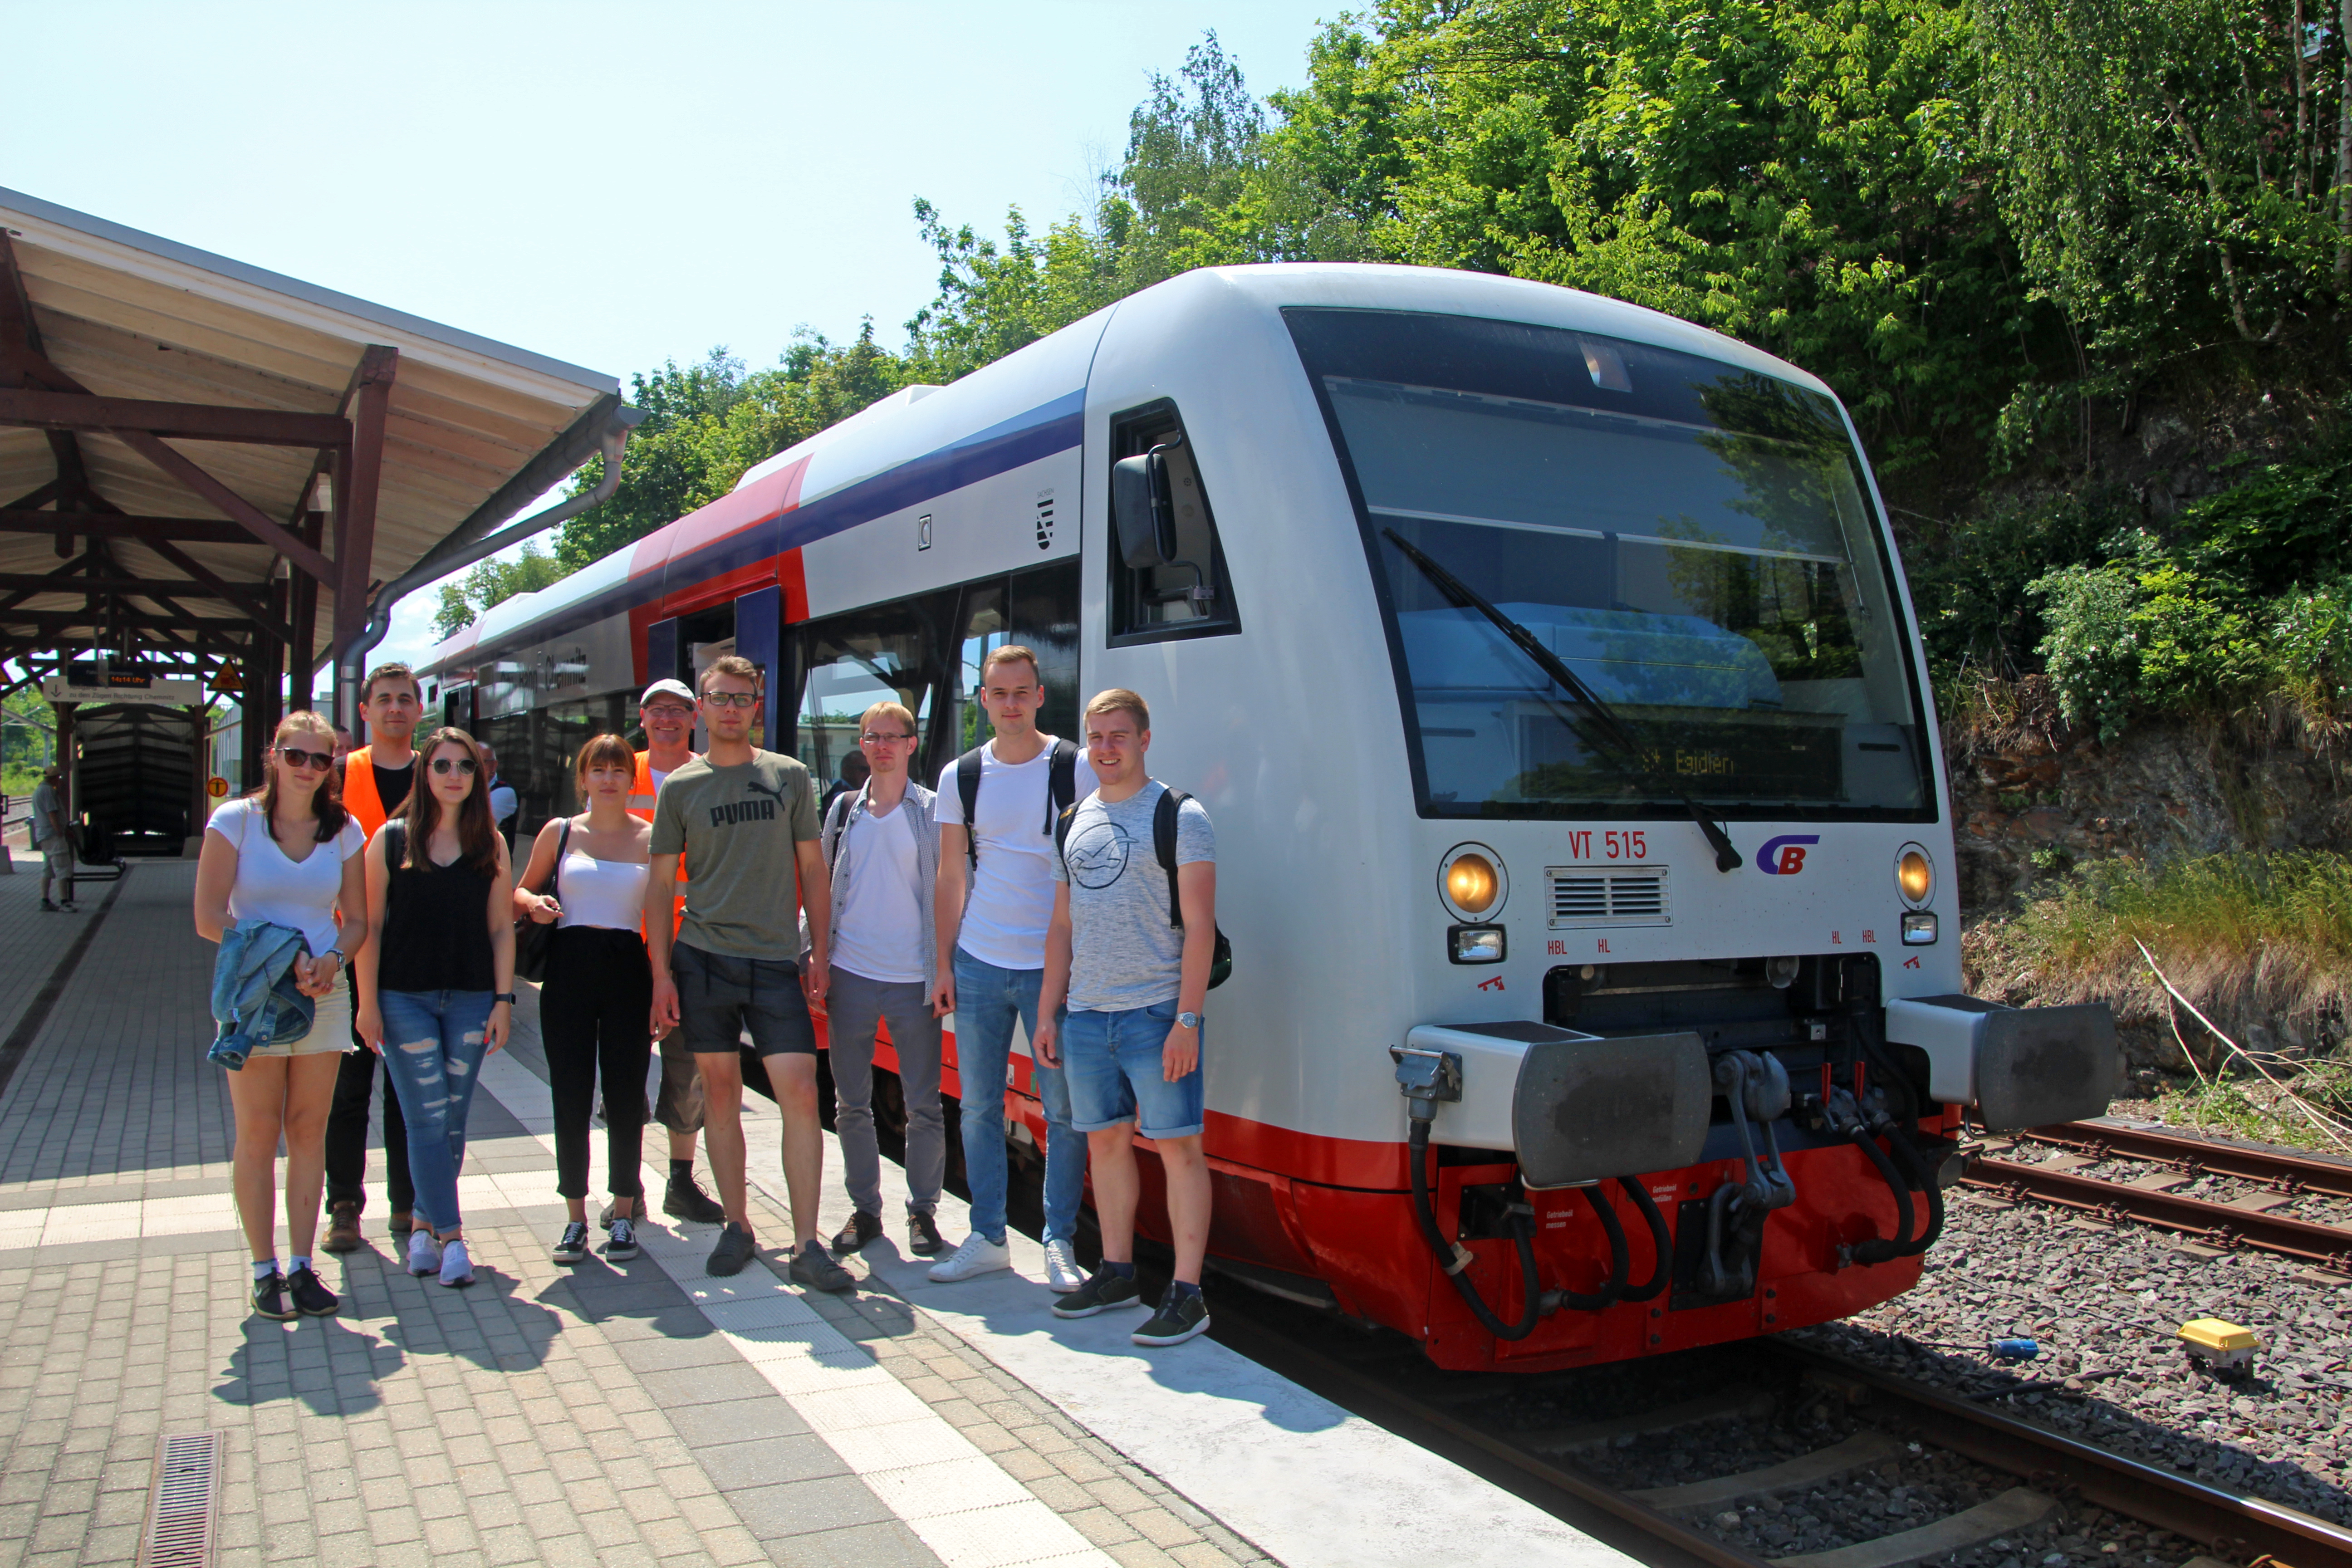 Gruppenfoto: Eine Gruppe Studierender steht auf einem Bahnsteig vor einem Triebwagen der Eisenbahn.